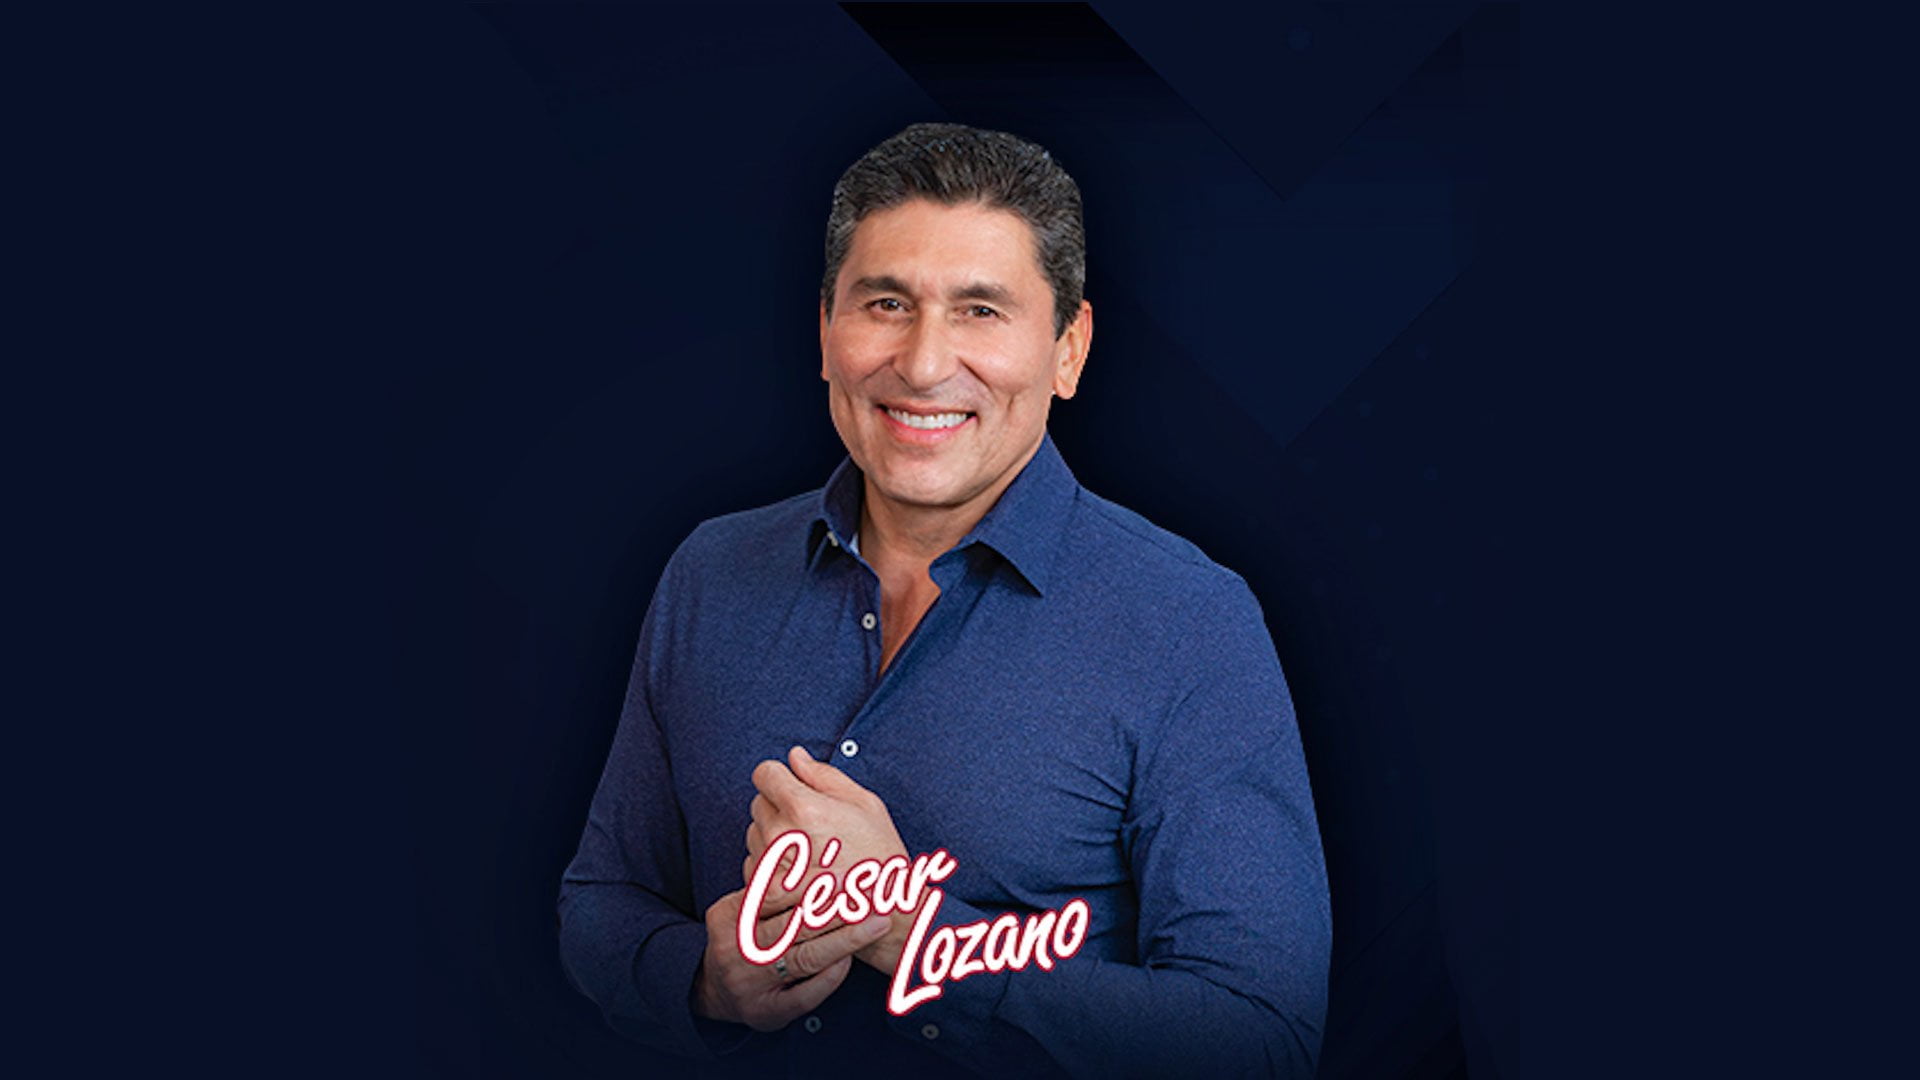 Cesar Lozano